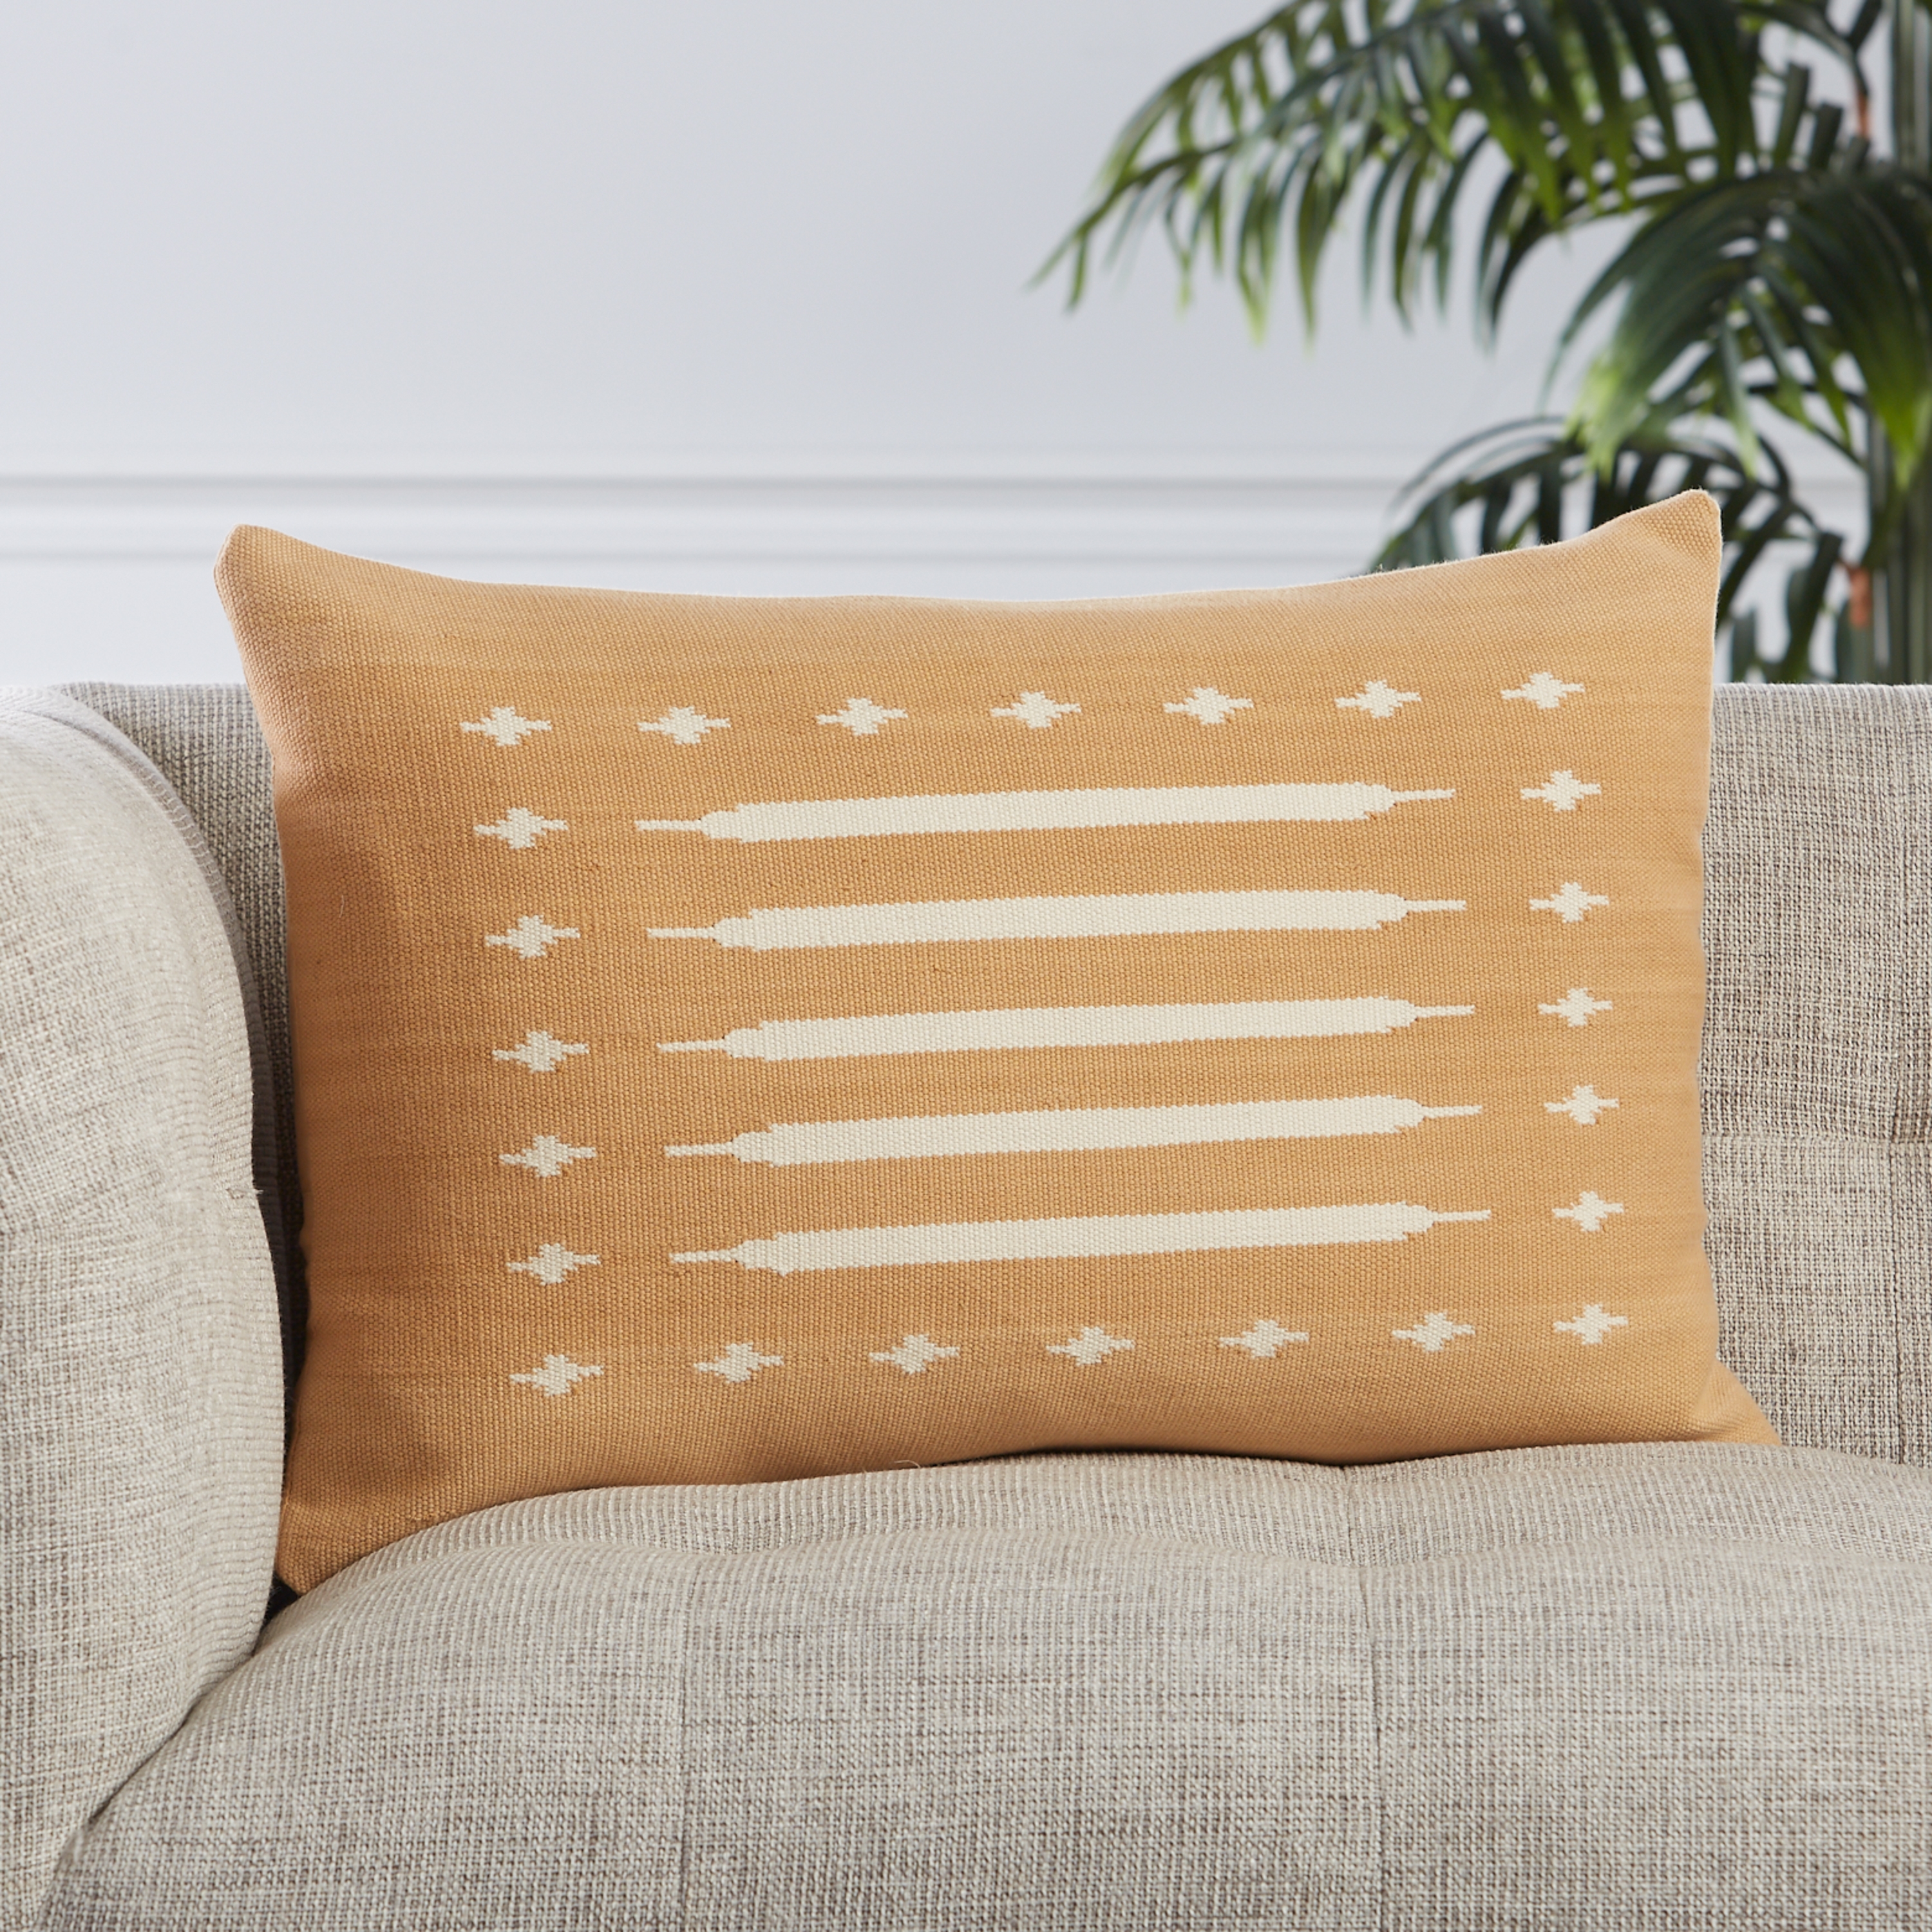 Design (US) Light Tan 16"X24" Pillow - Image 3